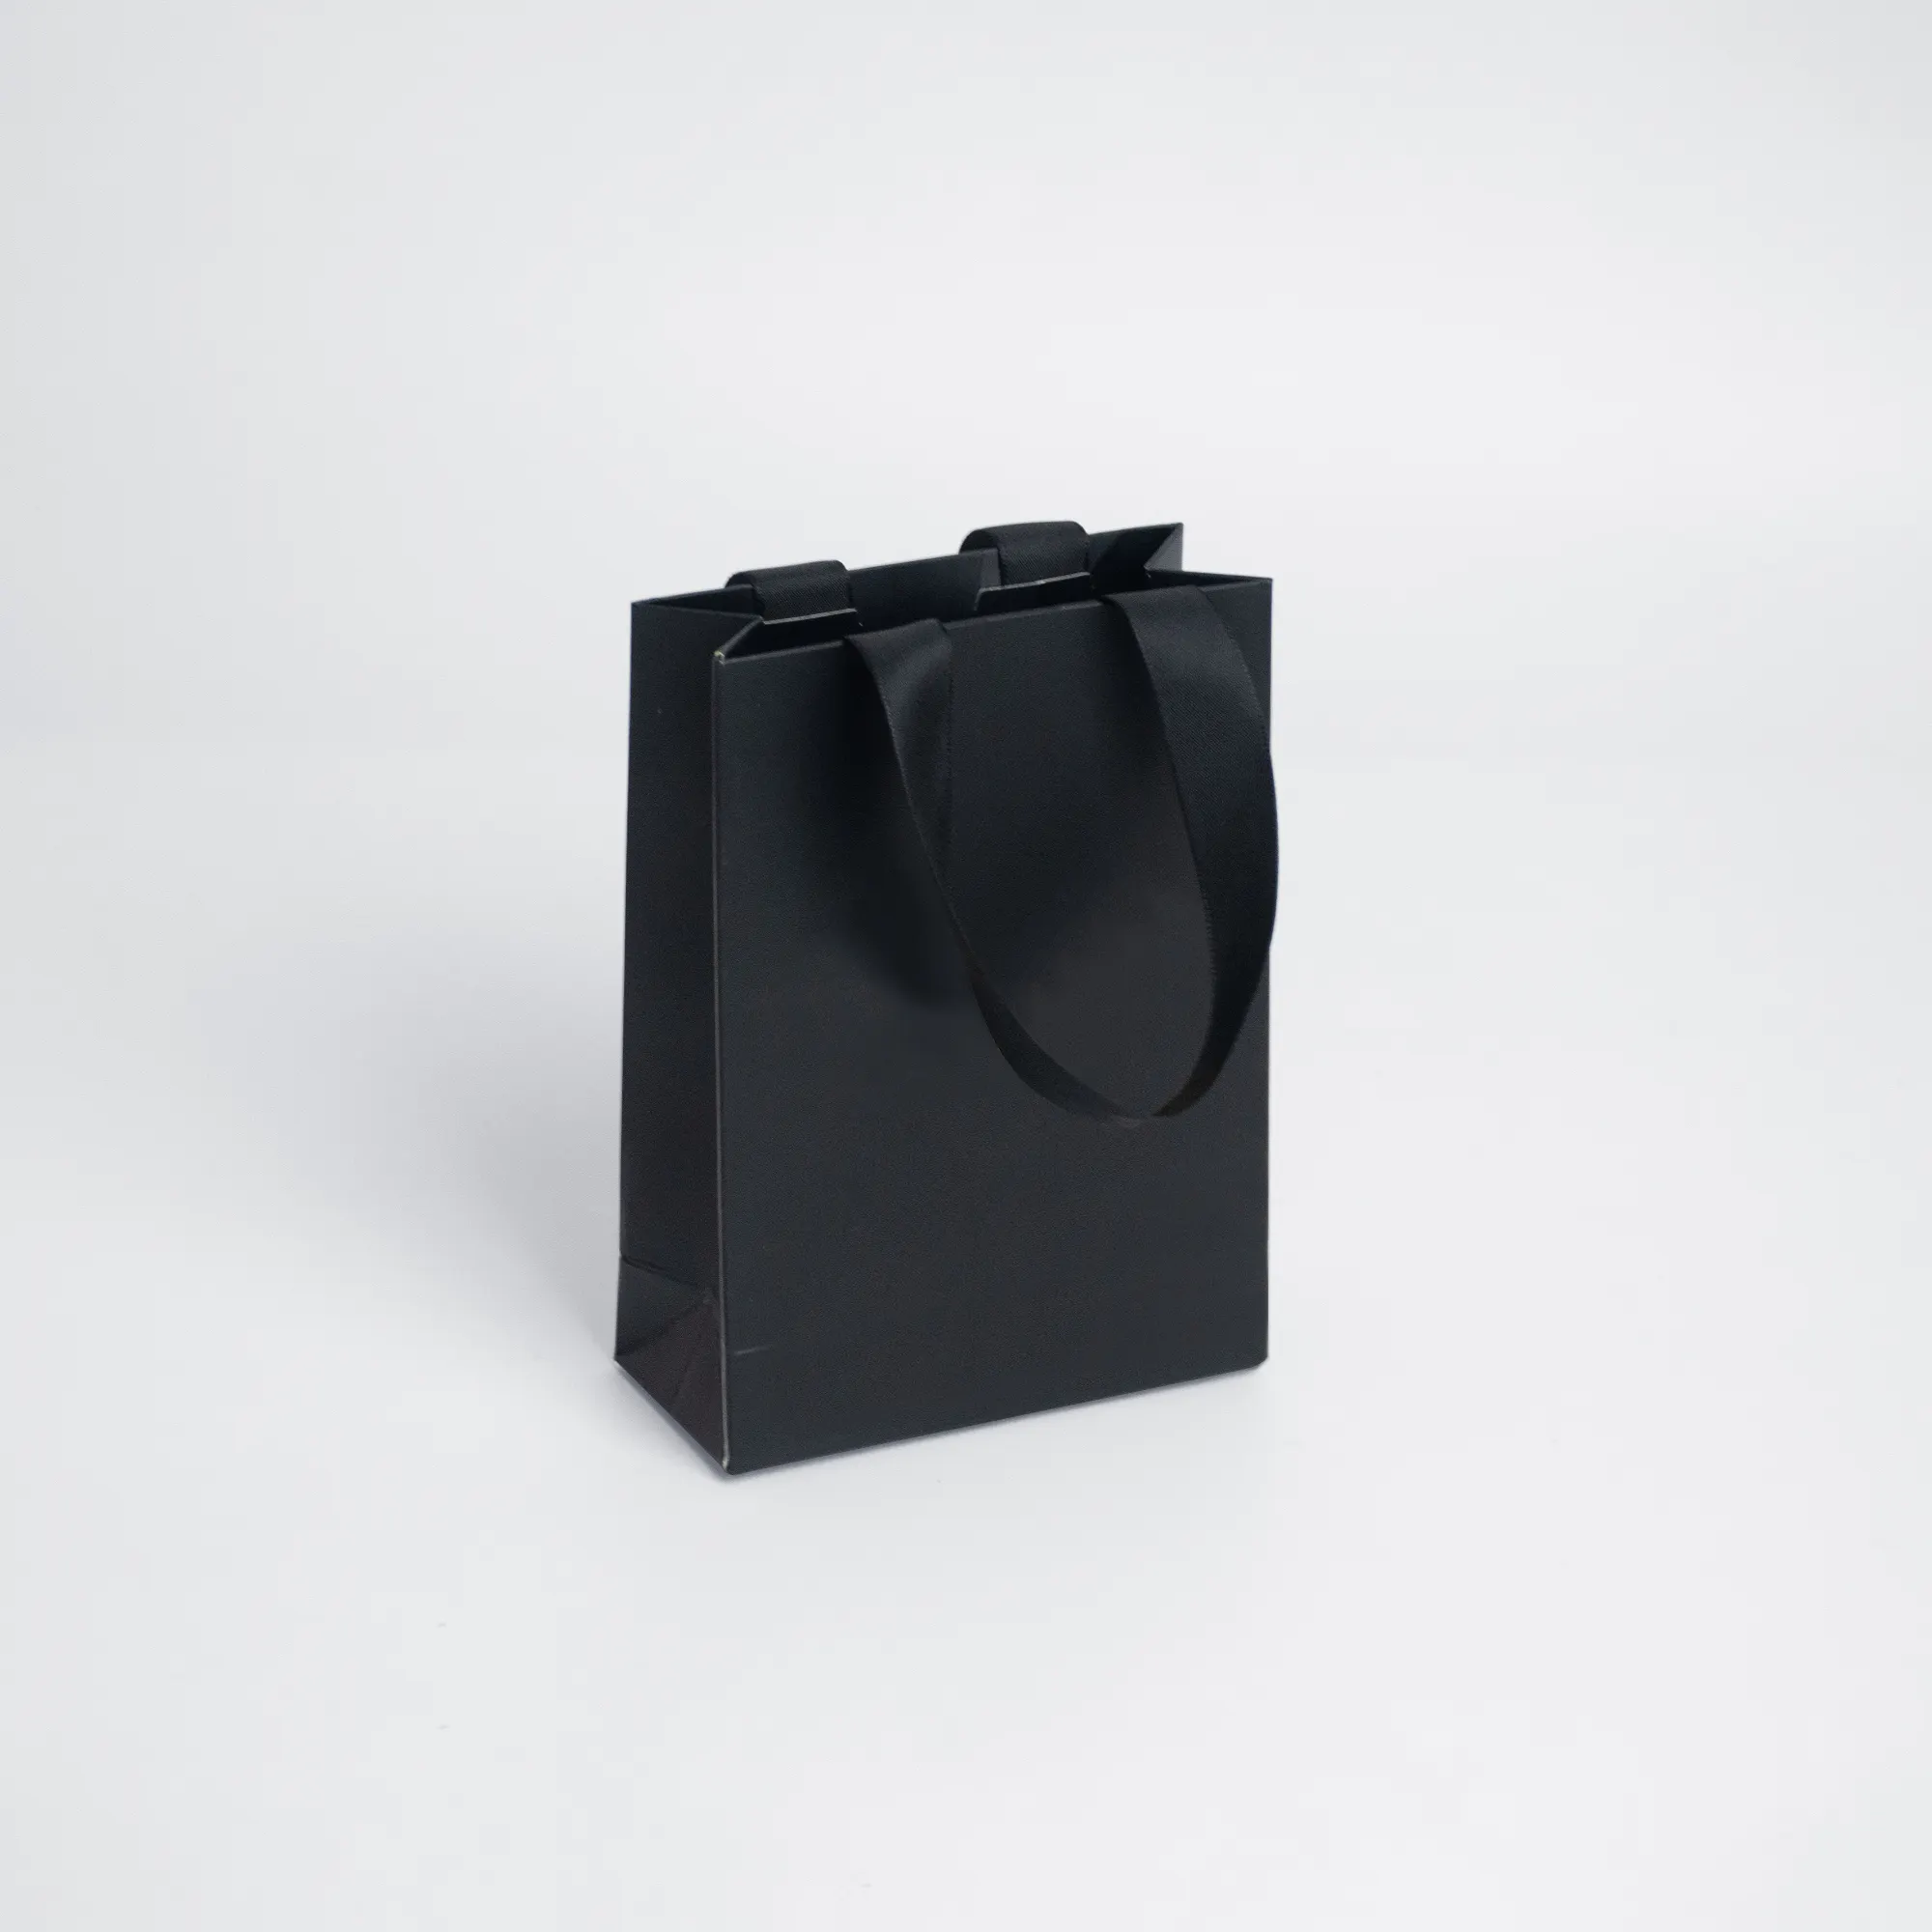 Çevre dostu siyah karton kutu taşıyıcı çanta kağıt alışveriş çantası hediye paketleme torbası toptan fabrika fiyat lüks Kraft kağıt